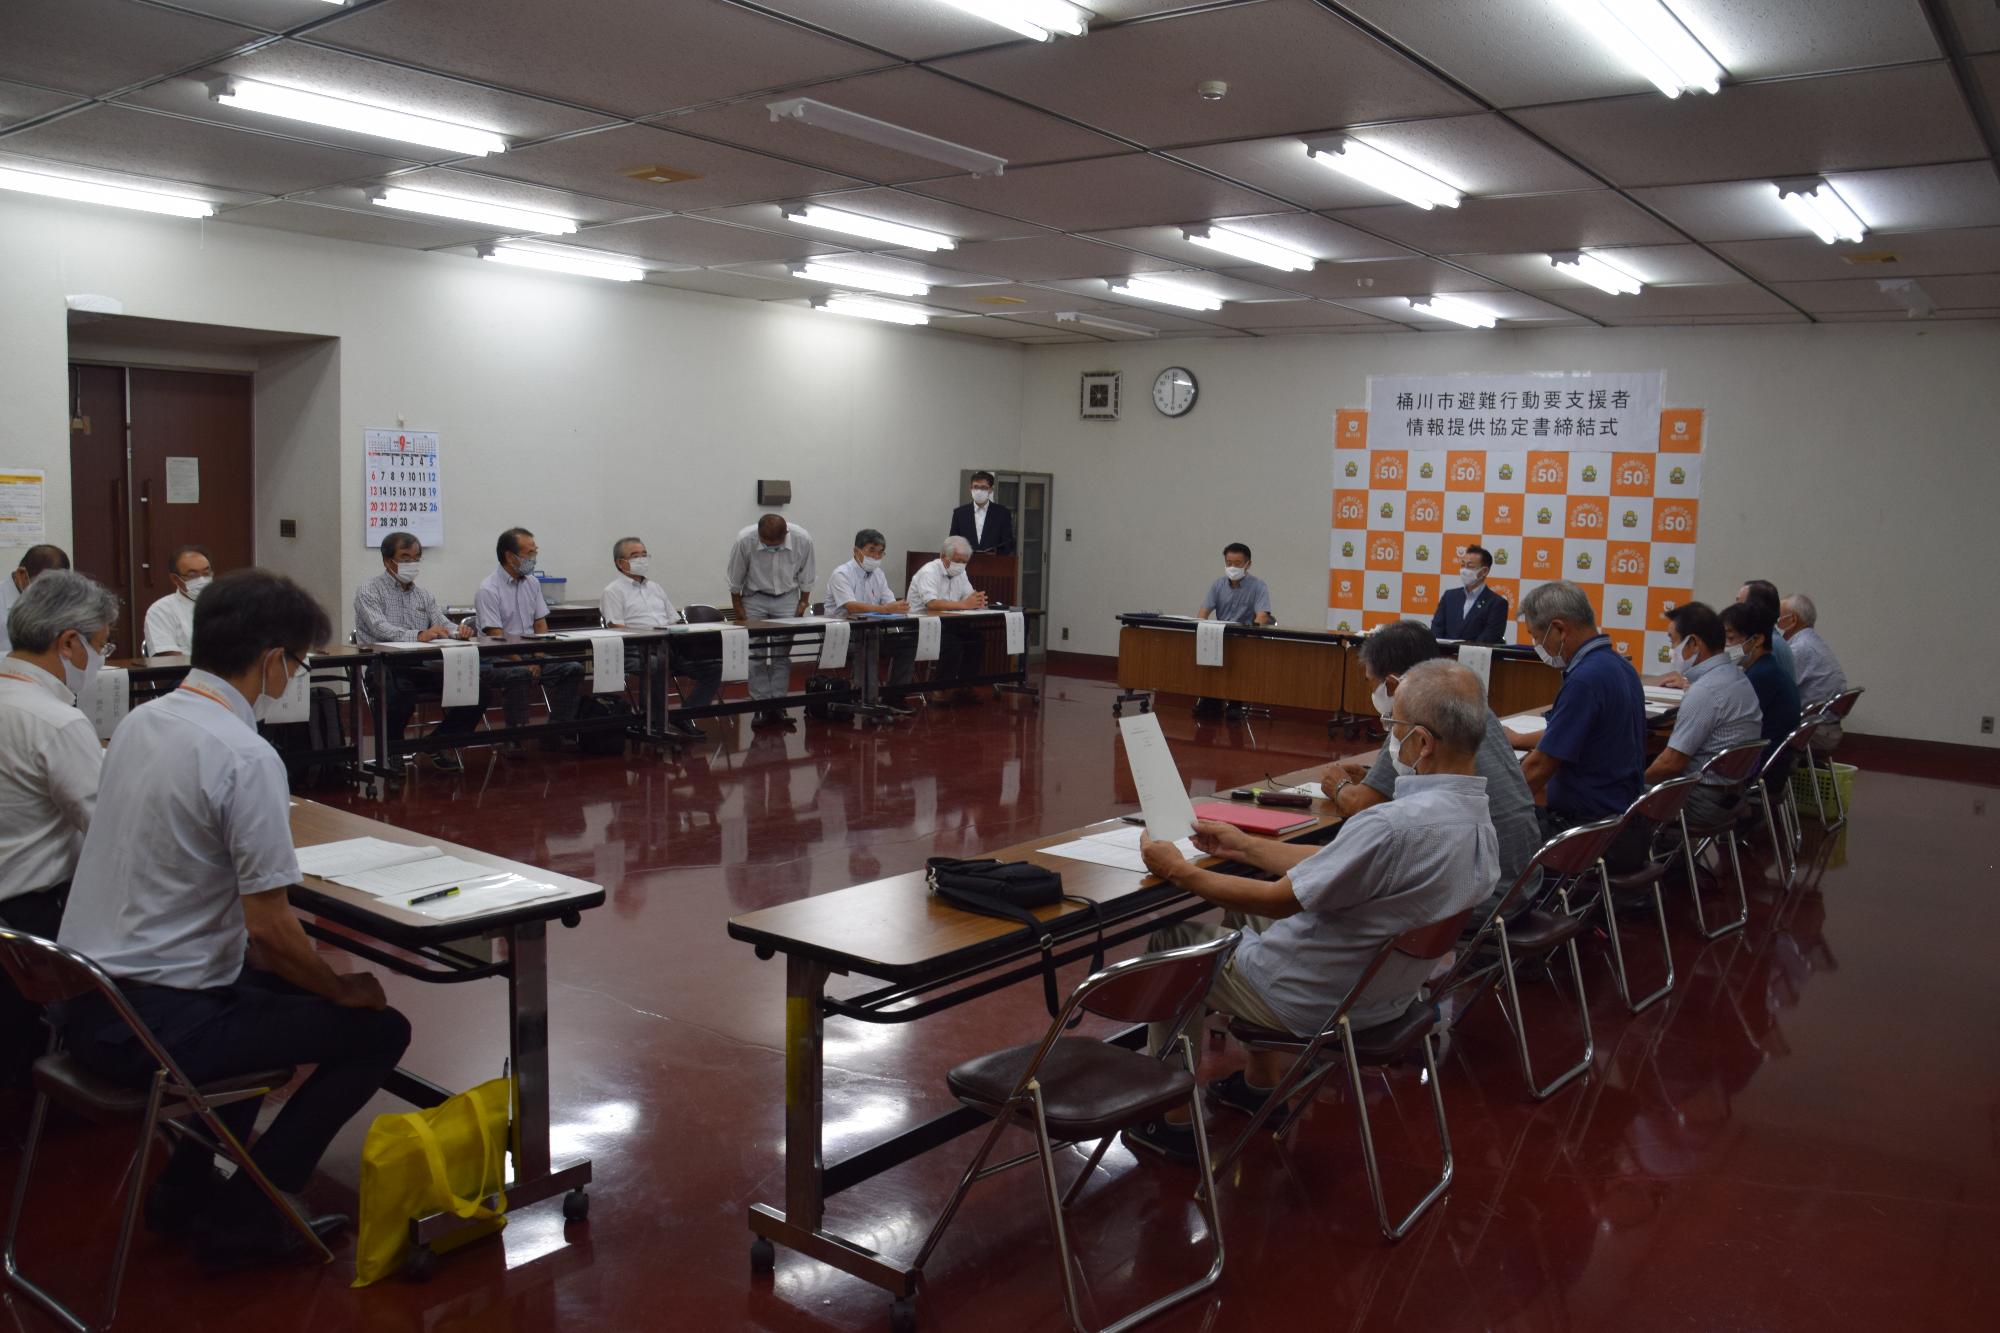 桶川市避難行動要支援者情報提供協定書締結式で長机をロの字に配置し出席者が座っている様子